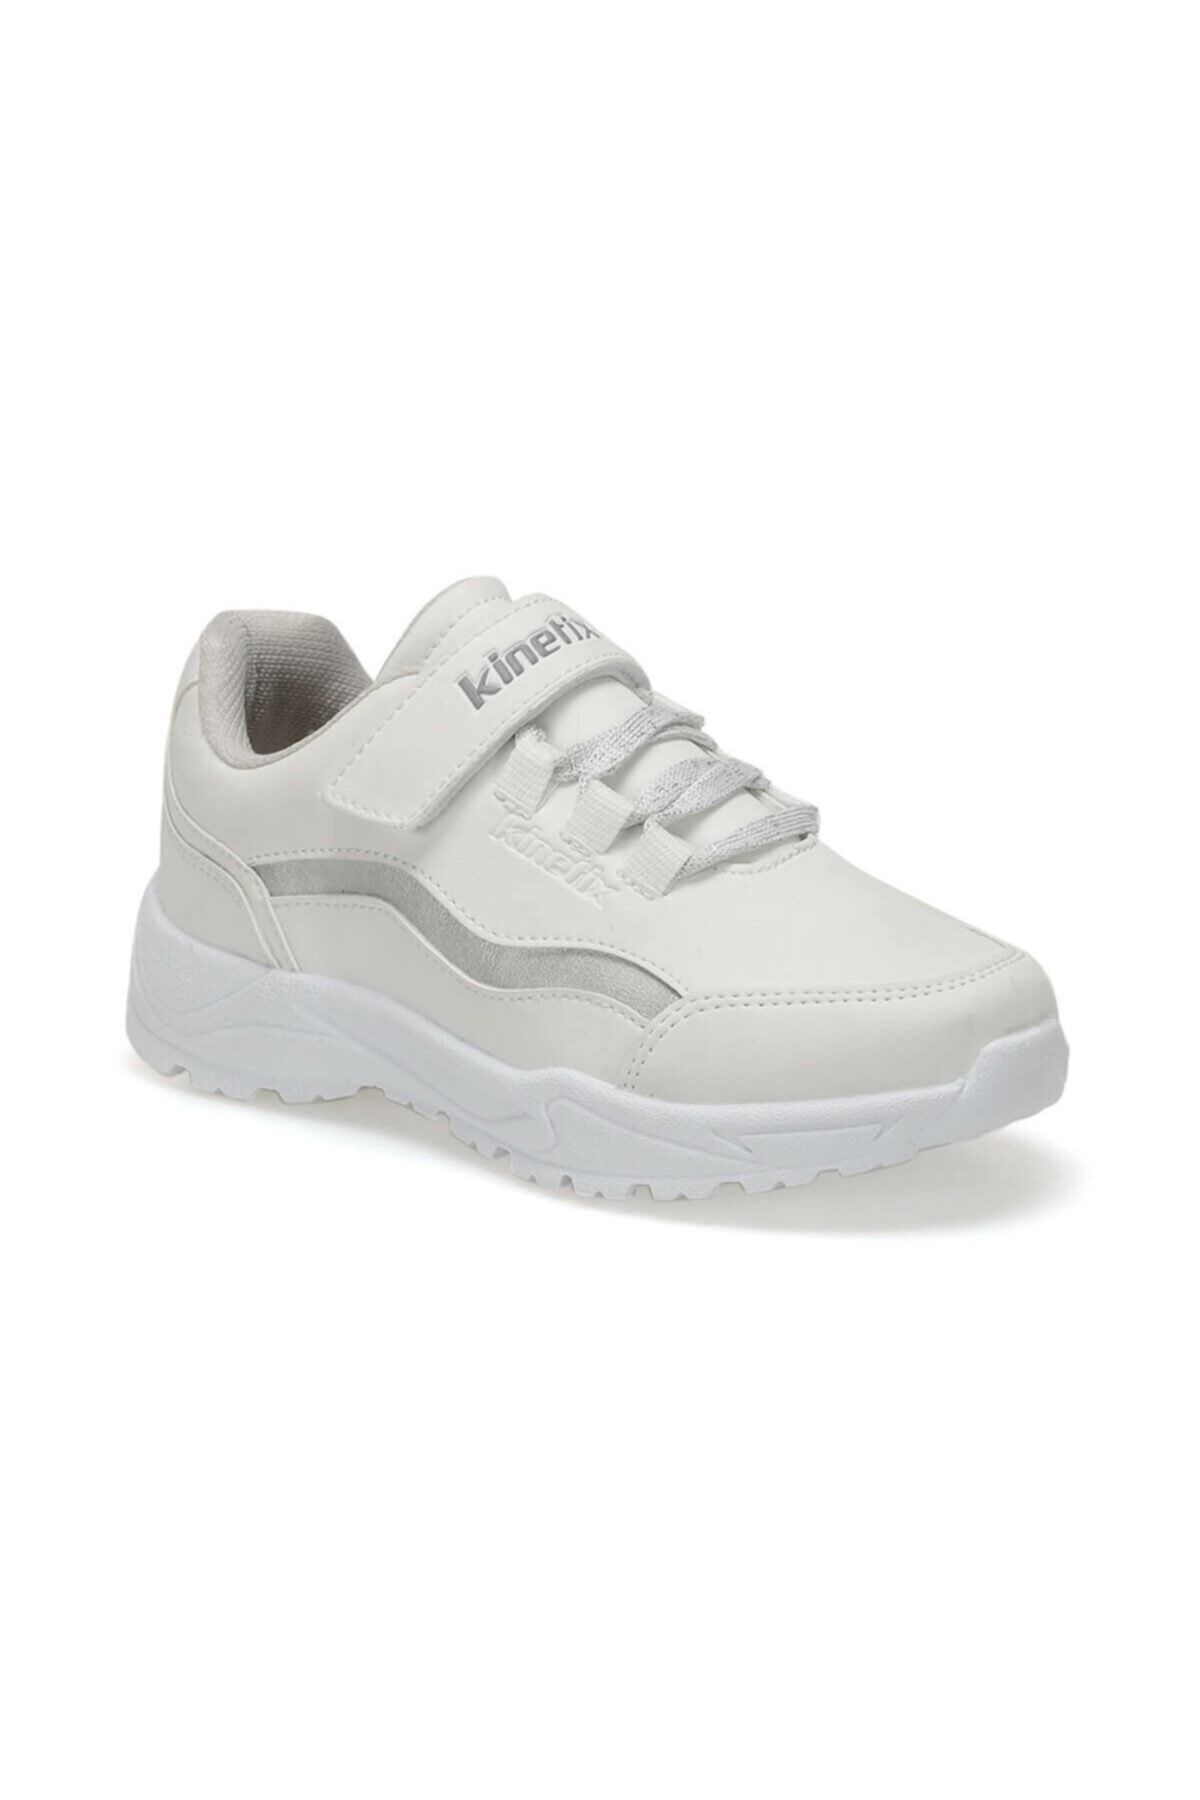 Kinetix ARTEN 9PR Beyaz Kız Çocuk Yürüyüş Ayakkabısı 100425228